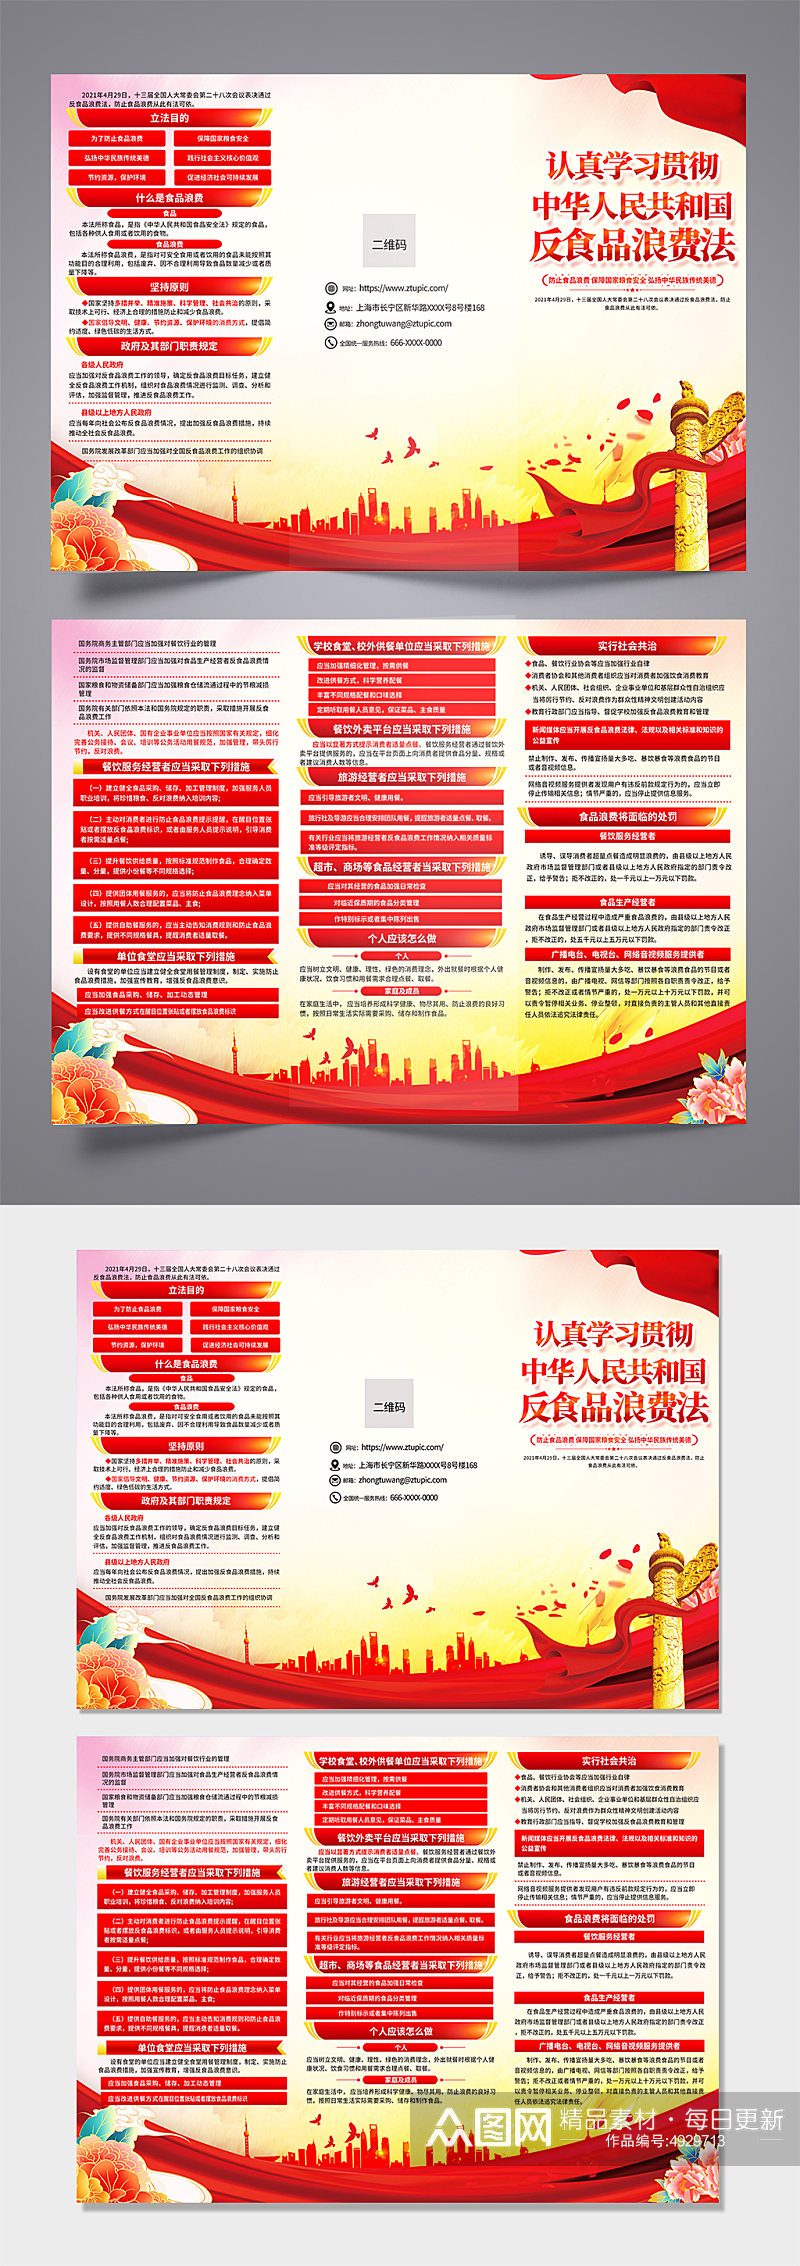 红色喜庆反食品浪费法党建三折页设计素材